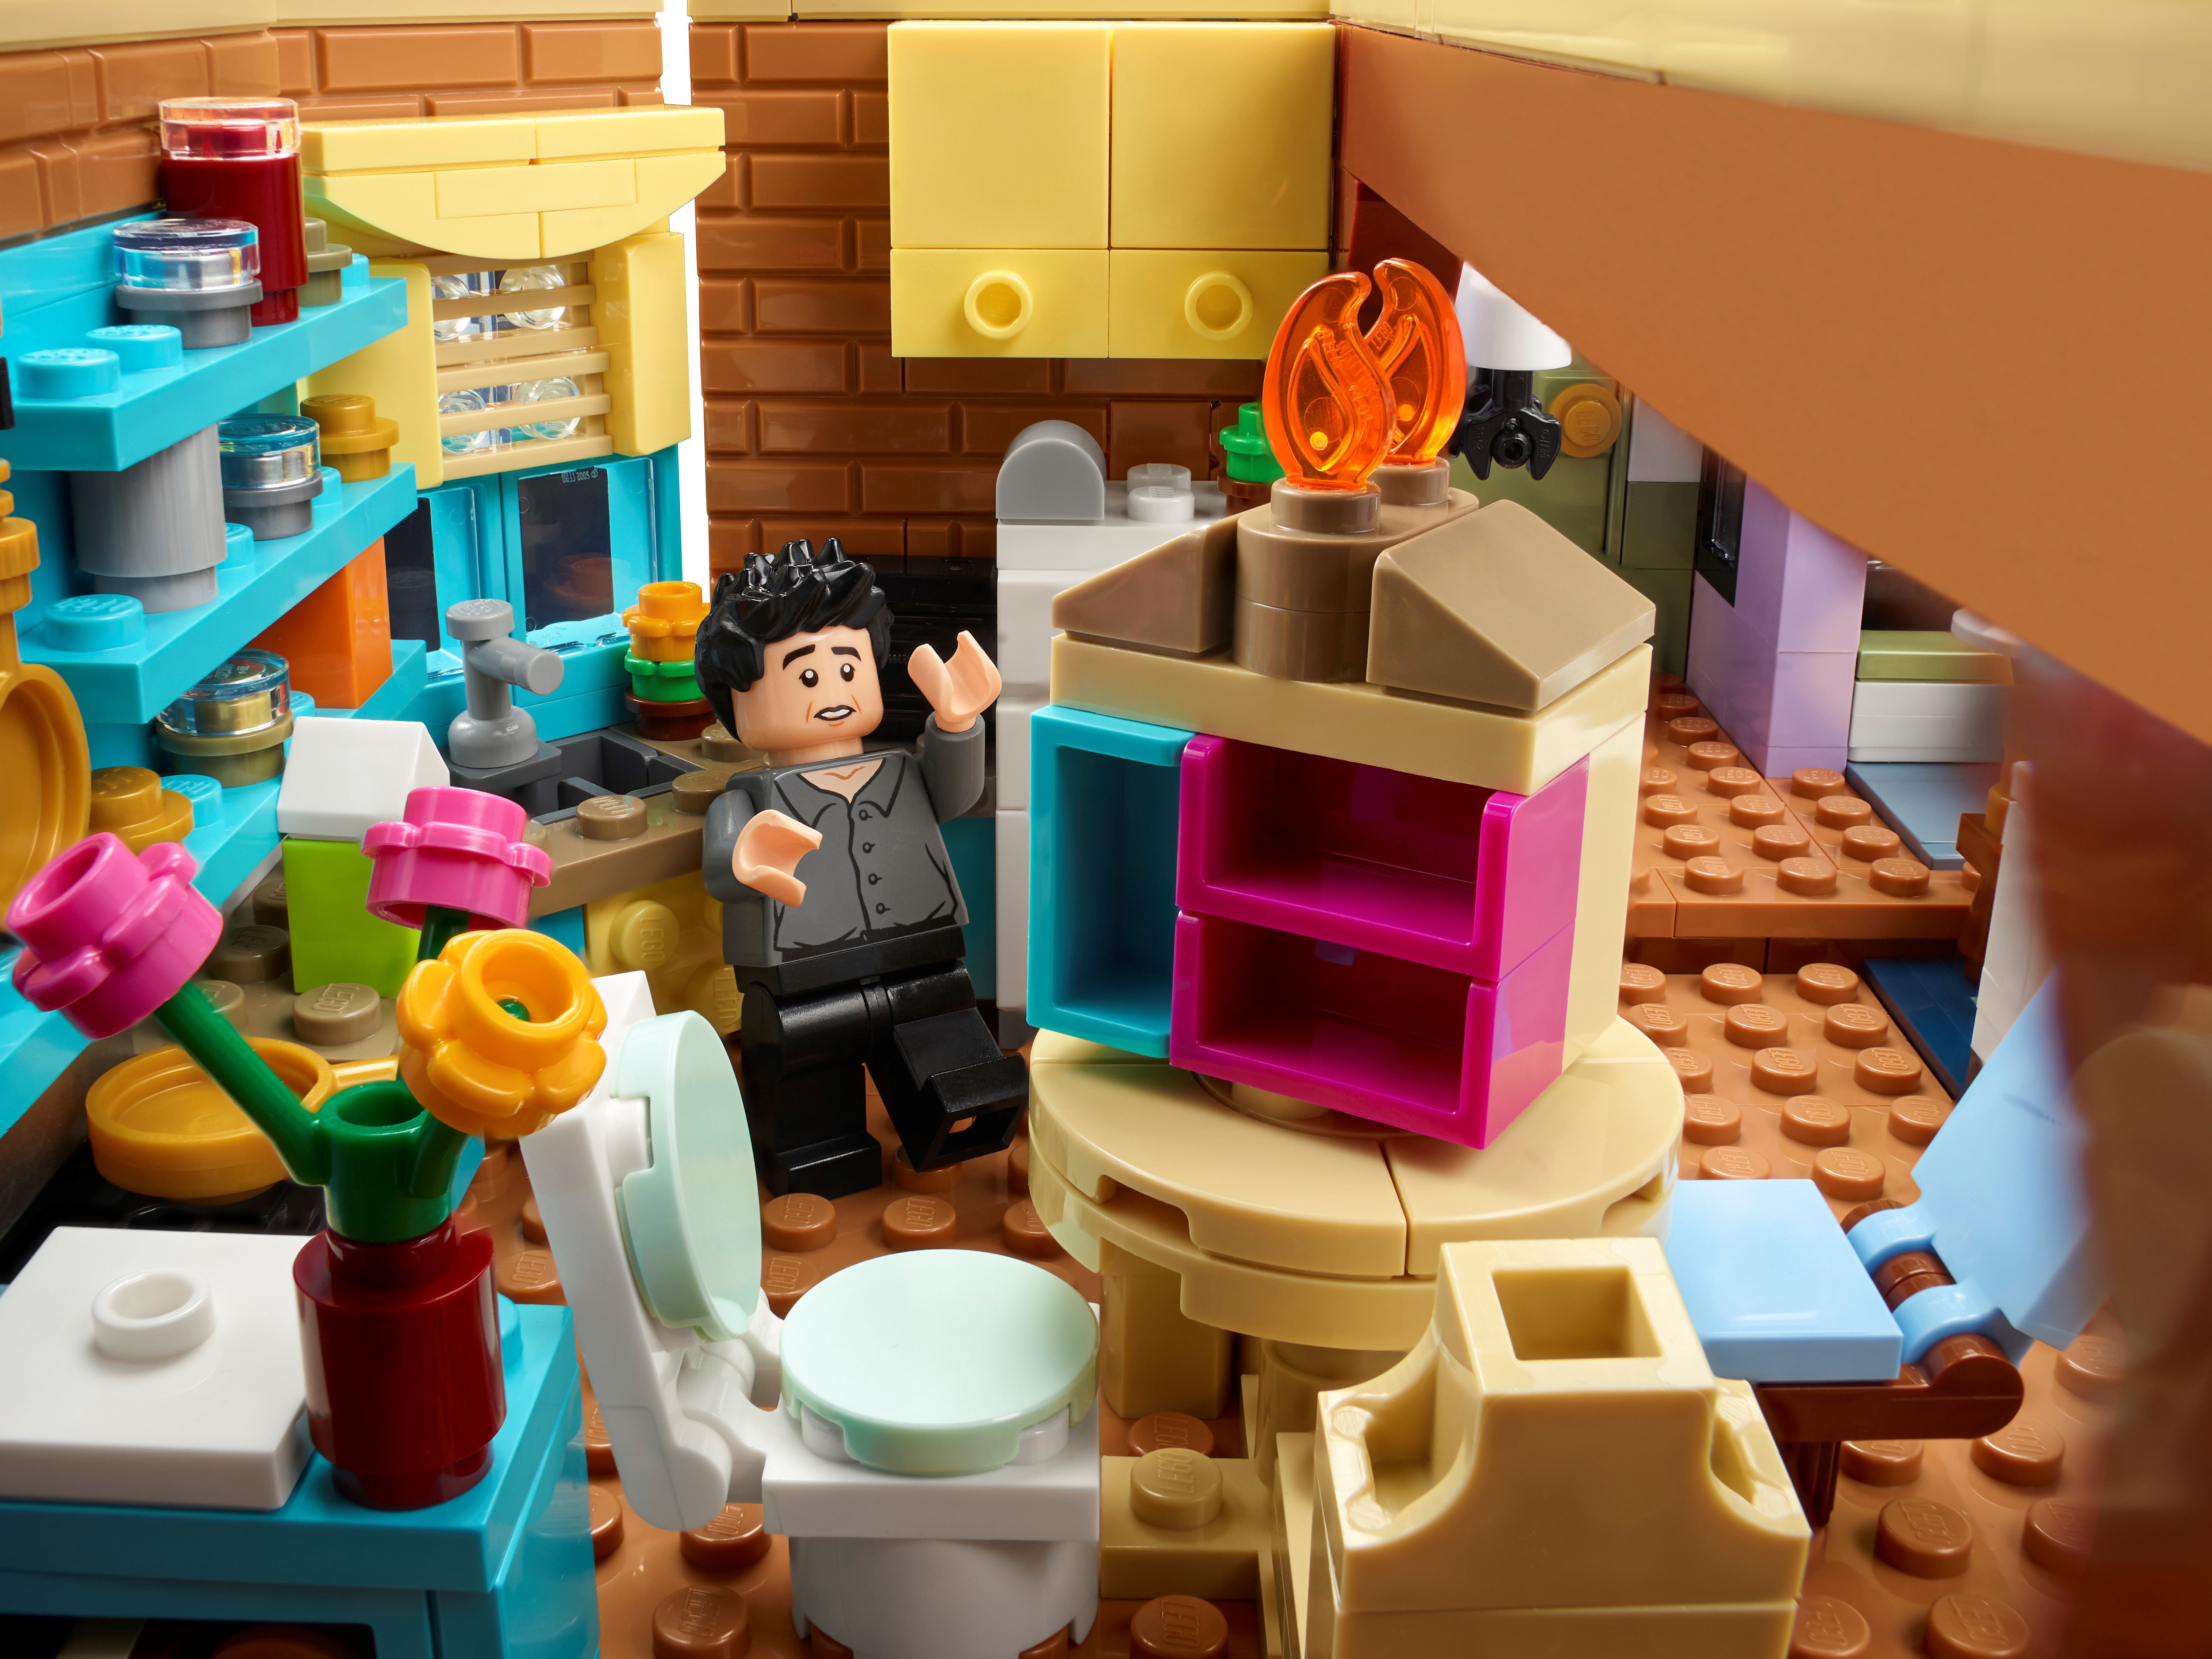 LEGO The Friends Apartments 10292 Building Kit (2,048 Pieces), Multicolor